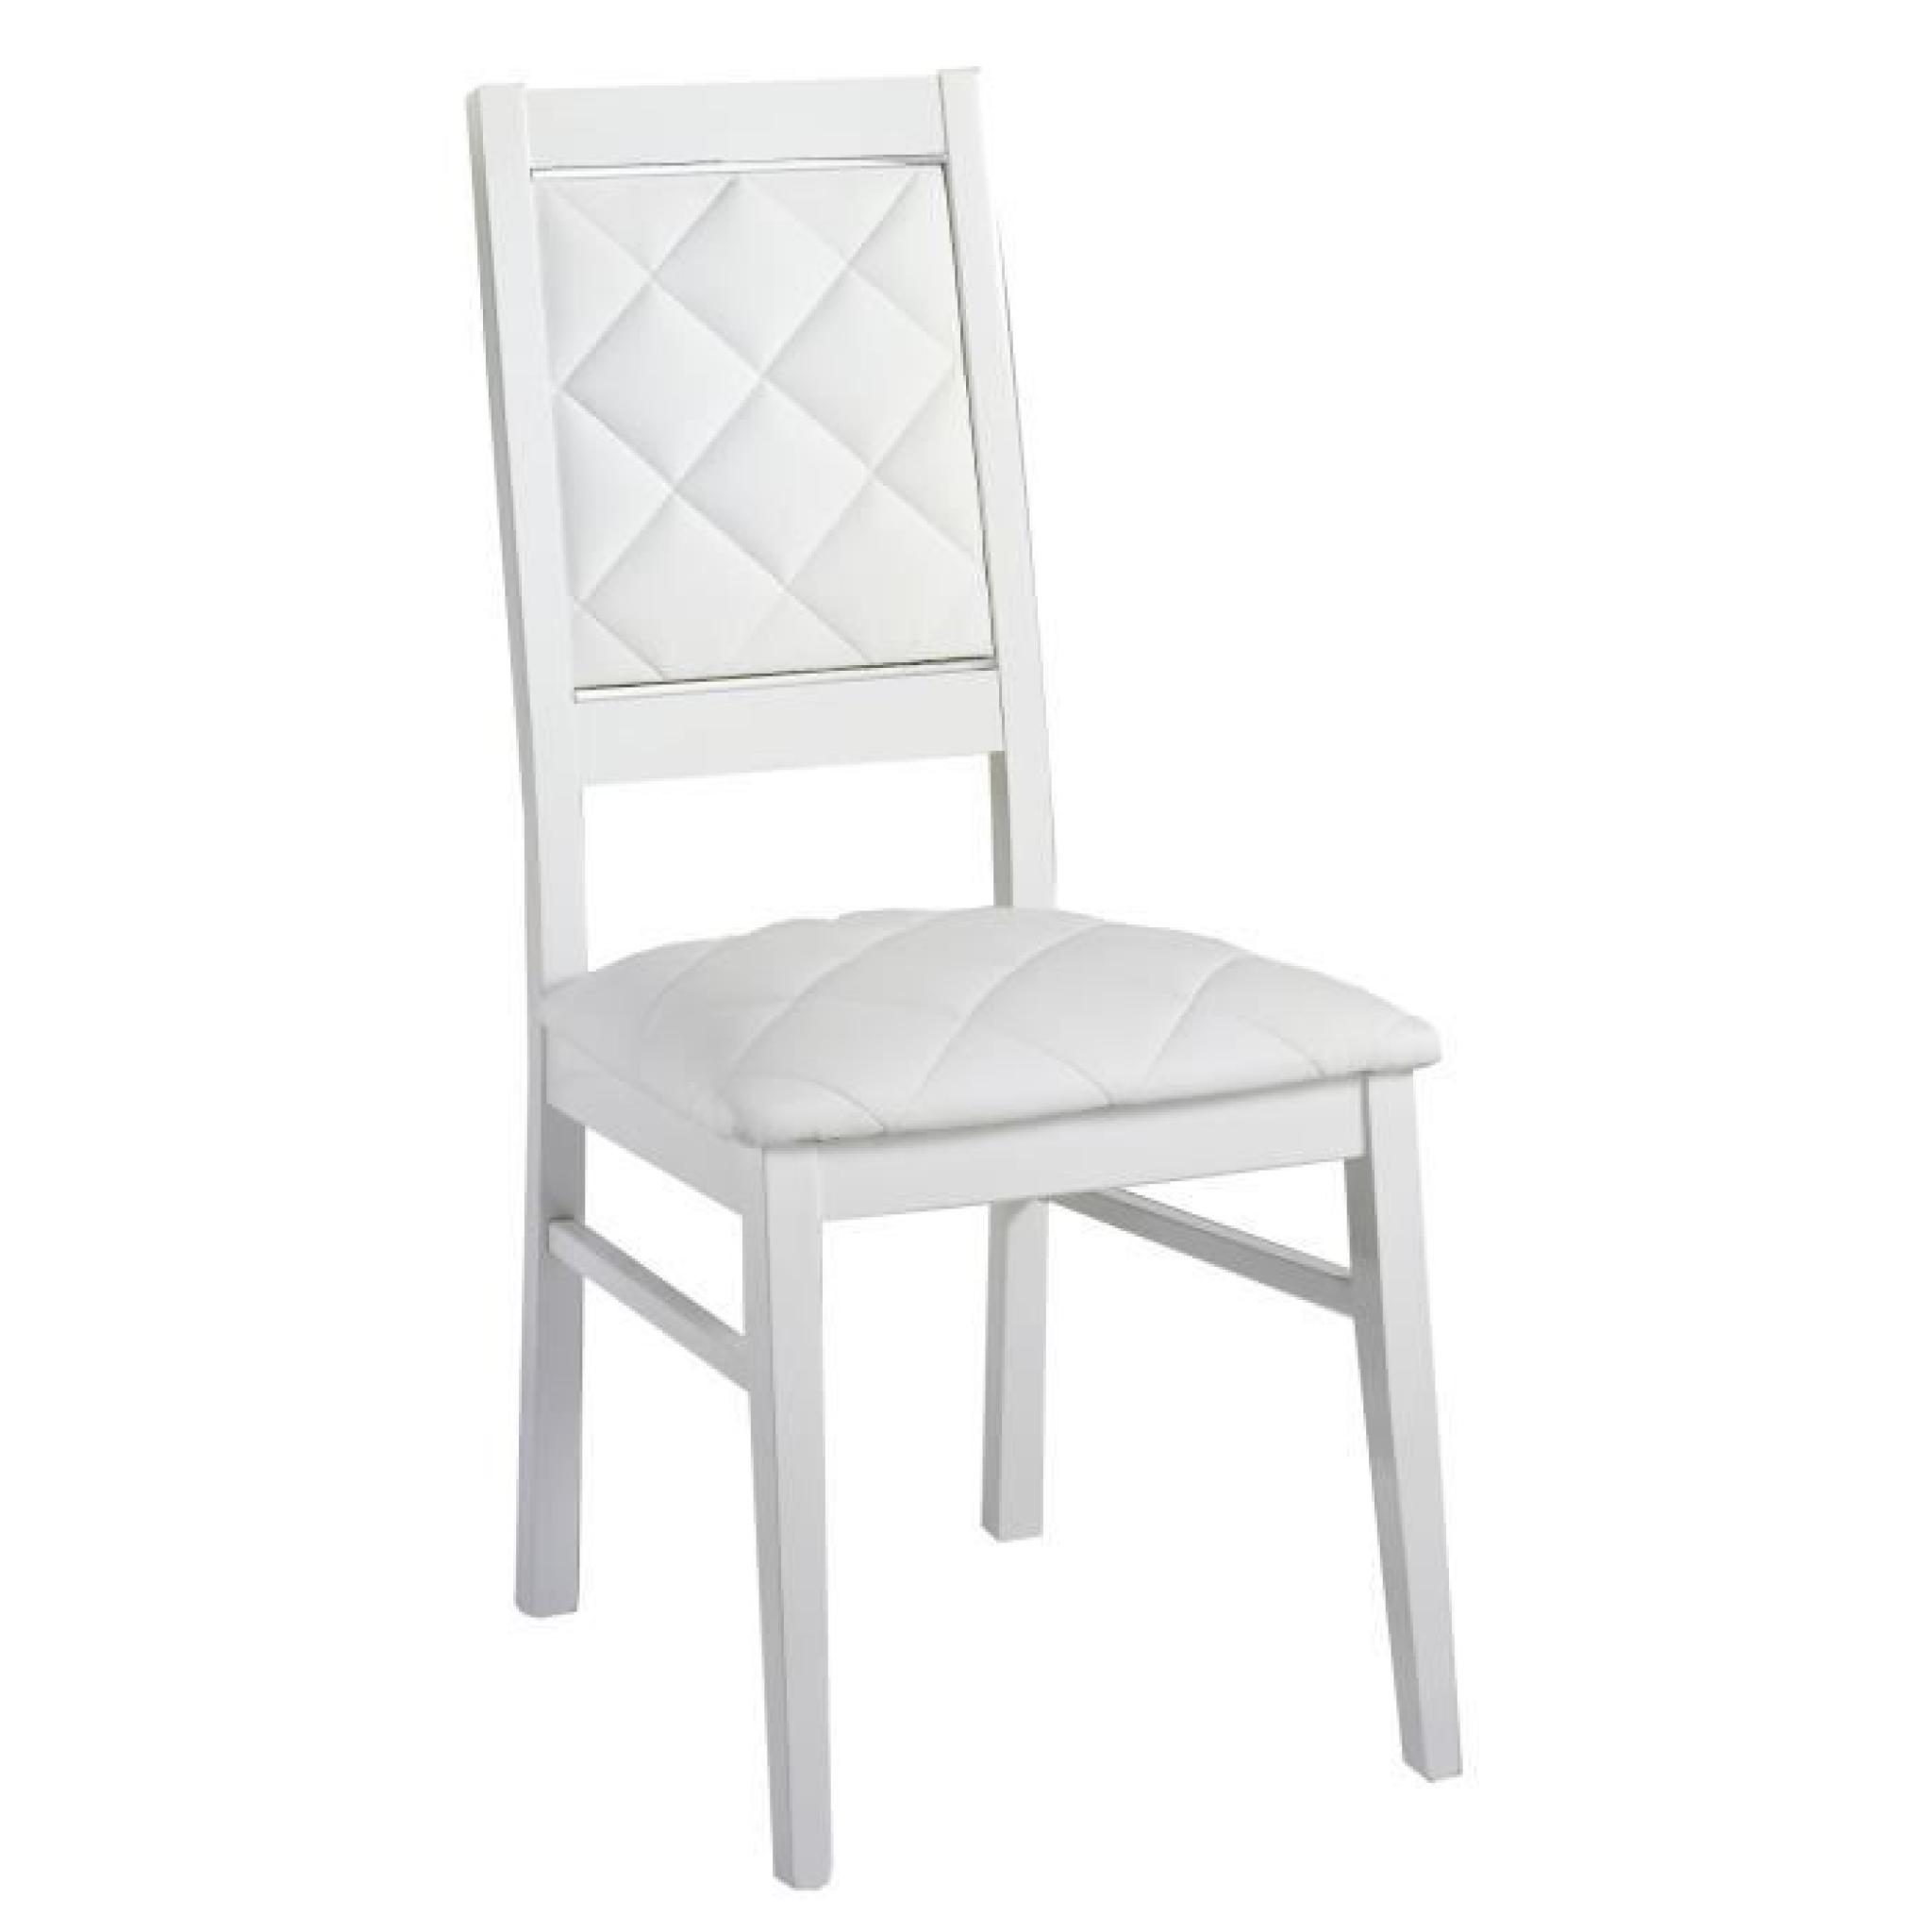 Table à manger blanc 160cm + 4 chaises ultra design blanc pas cher